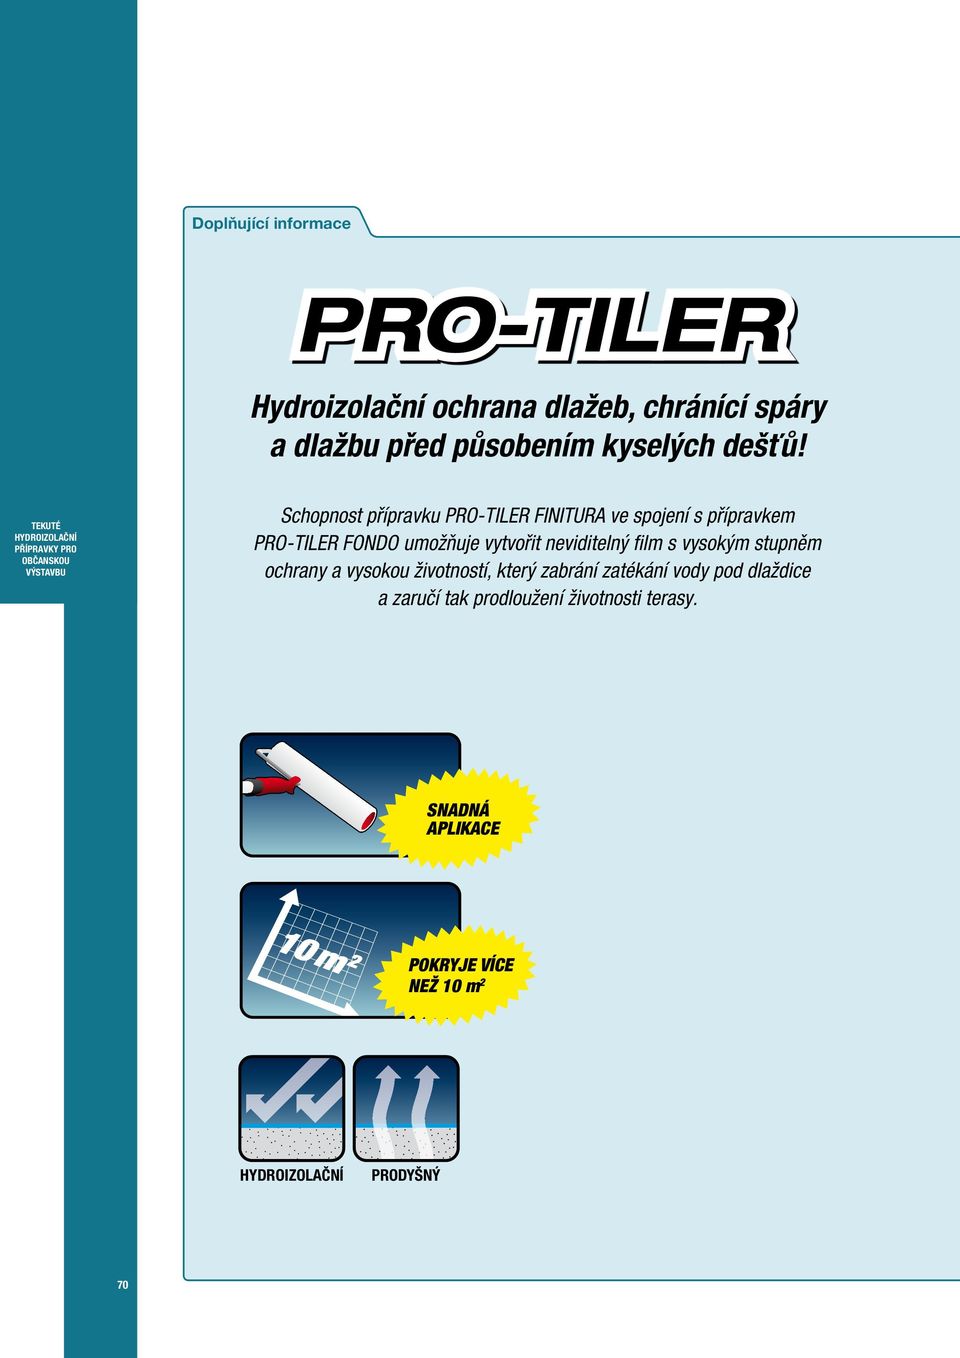 Schopnost přípravku PRO-TILER FINITURA ve spojení s přípravkem PRO-TILER FONDO umožňuje vytvořit